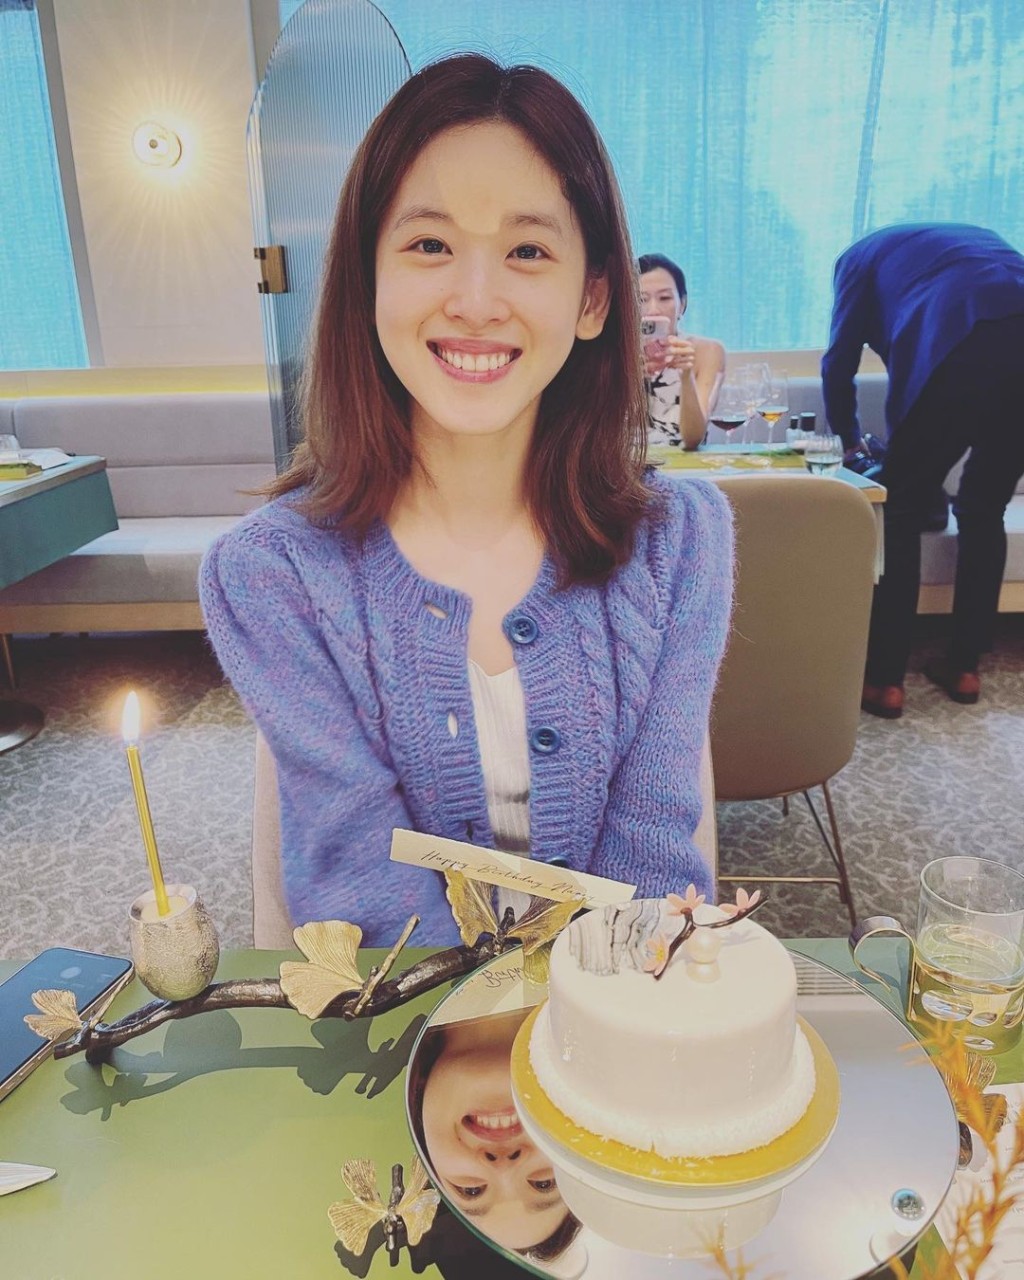 「奶茶妹」章澤天是清華校花。Instagram